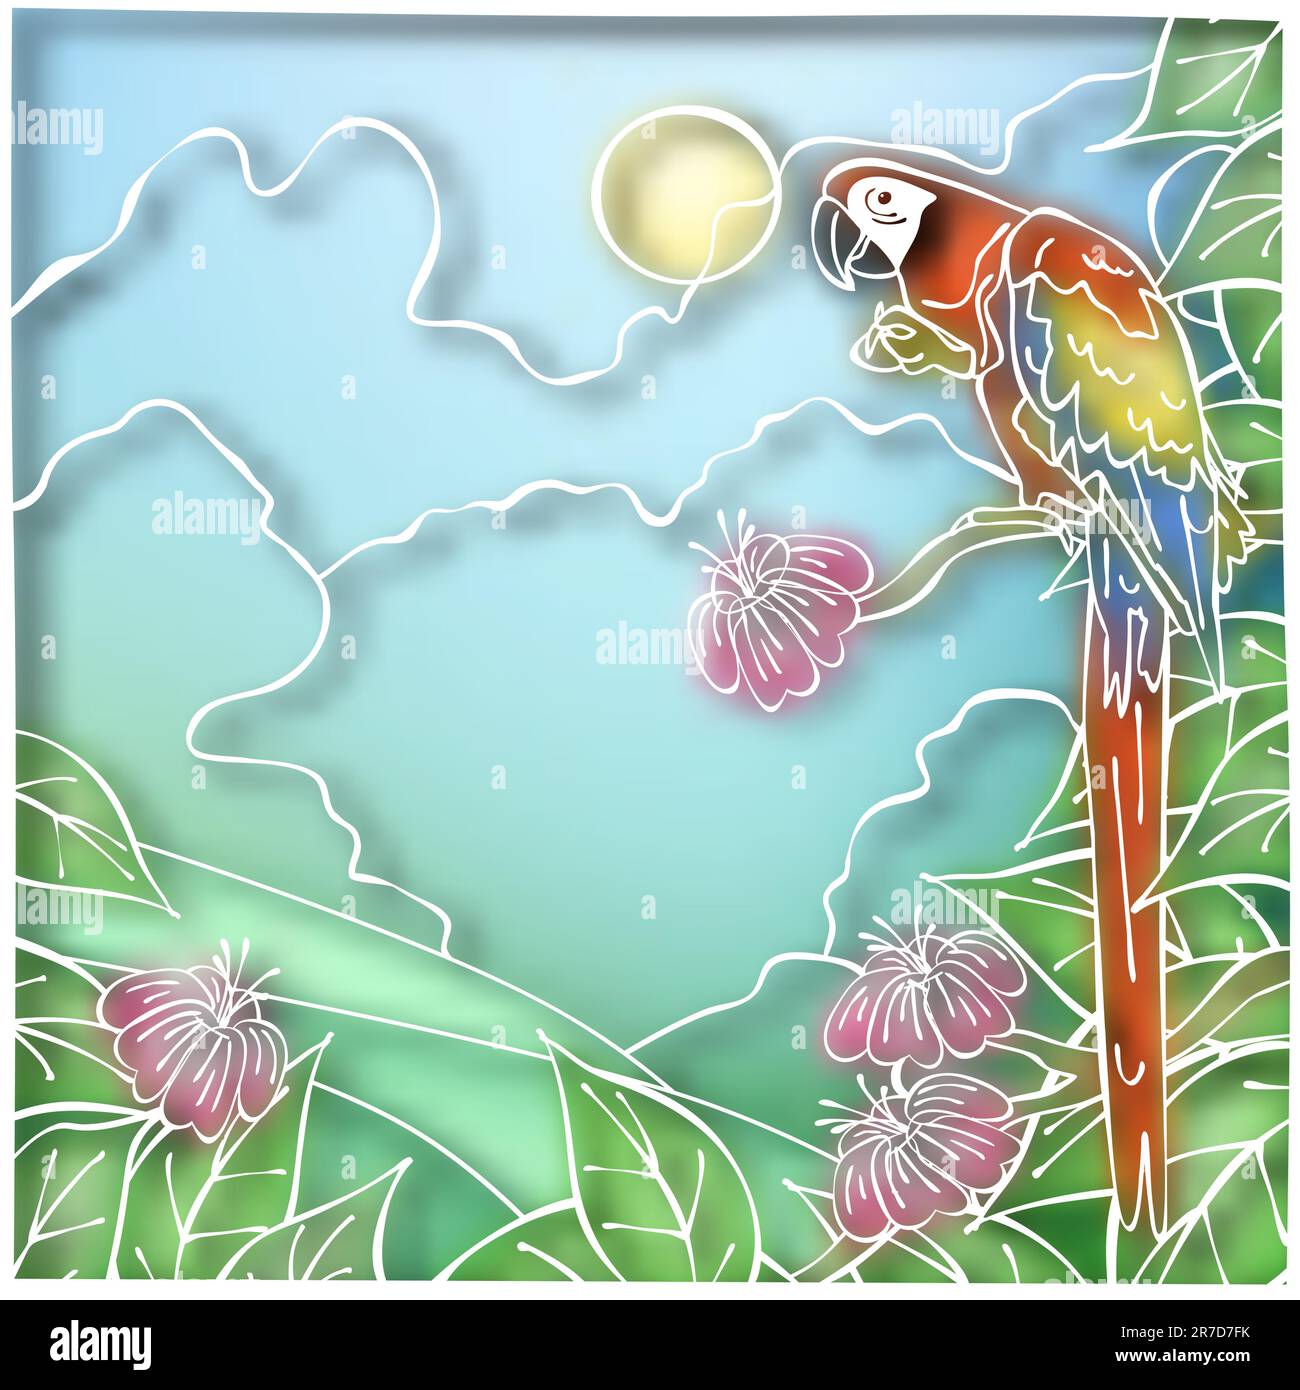 Bearbeitbares Vektor-Illustration eine Ara-Papagei im Batik-Stil unter Verwendung einer Verlaufsgitter Stock Vektor